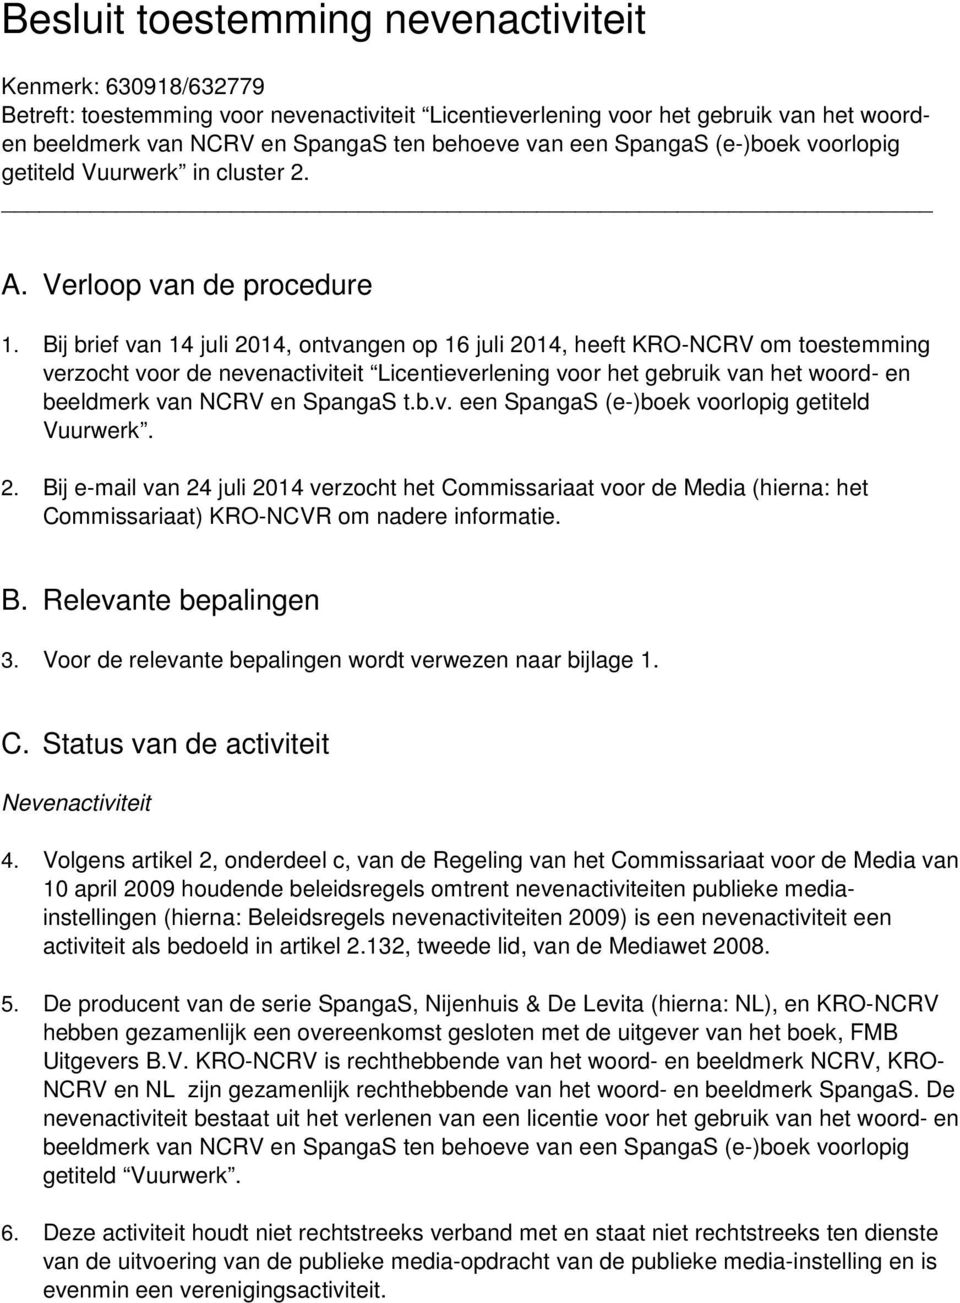 Bij brief van 14 juli 2014, ontvangen op 16 juli 2014, heeft KRO-NCRV om toestemming verzocht voor de nevenactiviteit Licentieverlening voor het gebruik van het woord- en beeldmerk van NCRV en